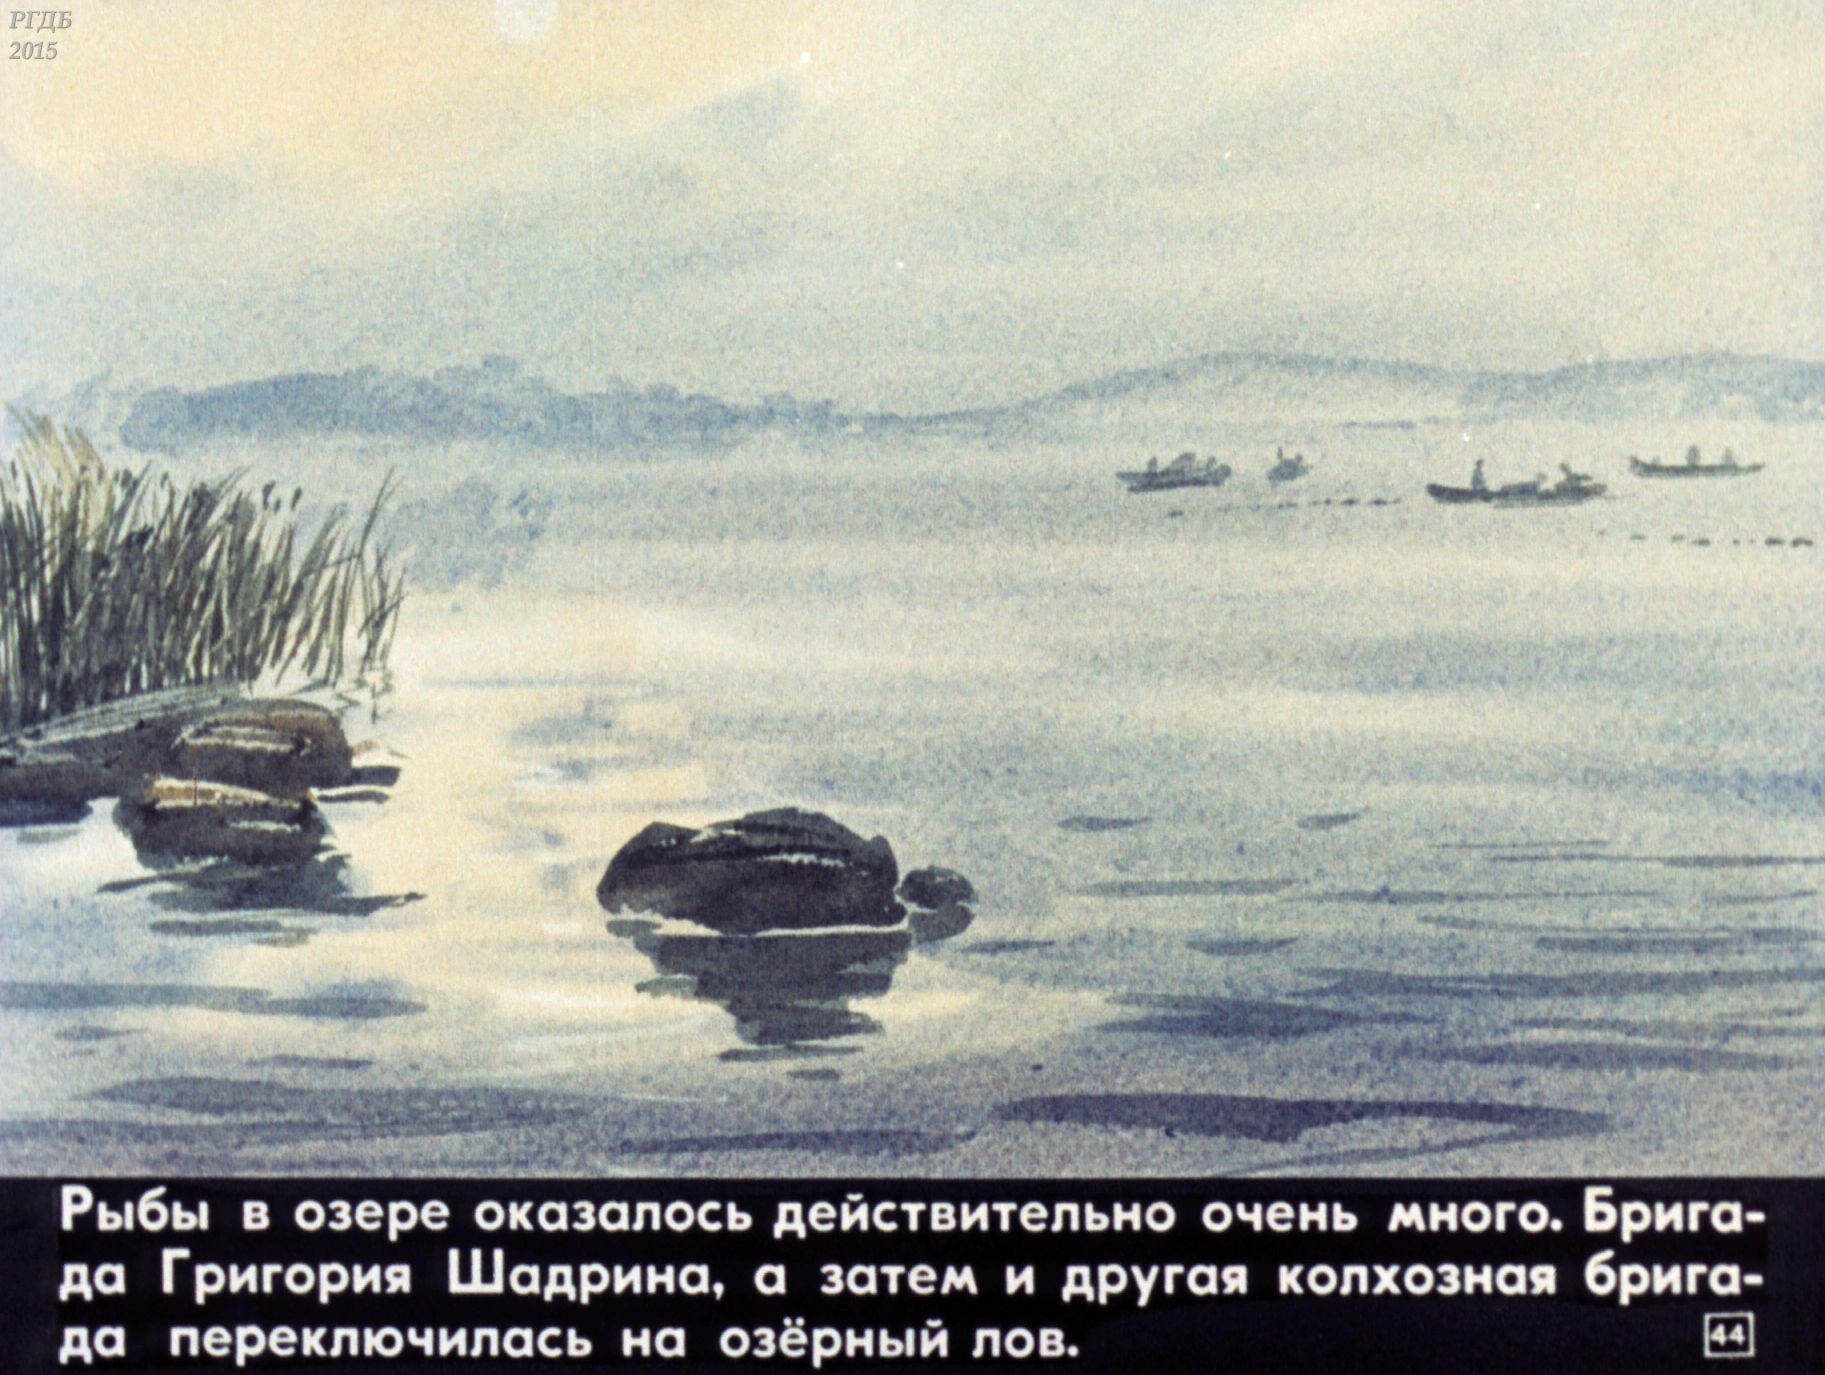 Пароход который встретил васютка. Васюткино озеро. Васюткино озеро Васютка. Иллюстрация к рассказу Васюткино озеро с цитатой. Озеро из Васюткино озеро.